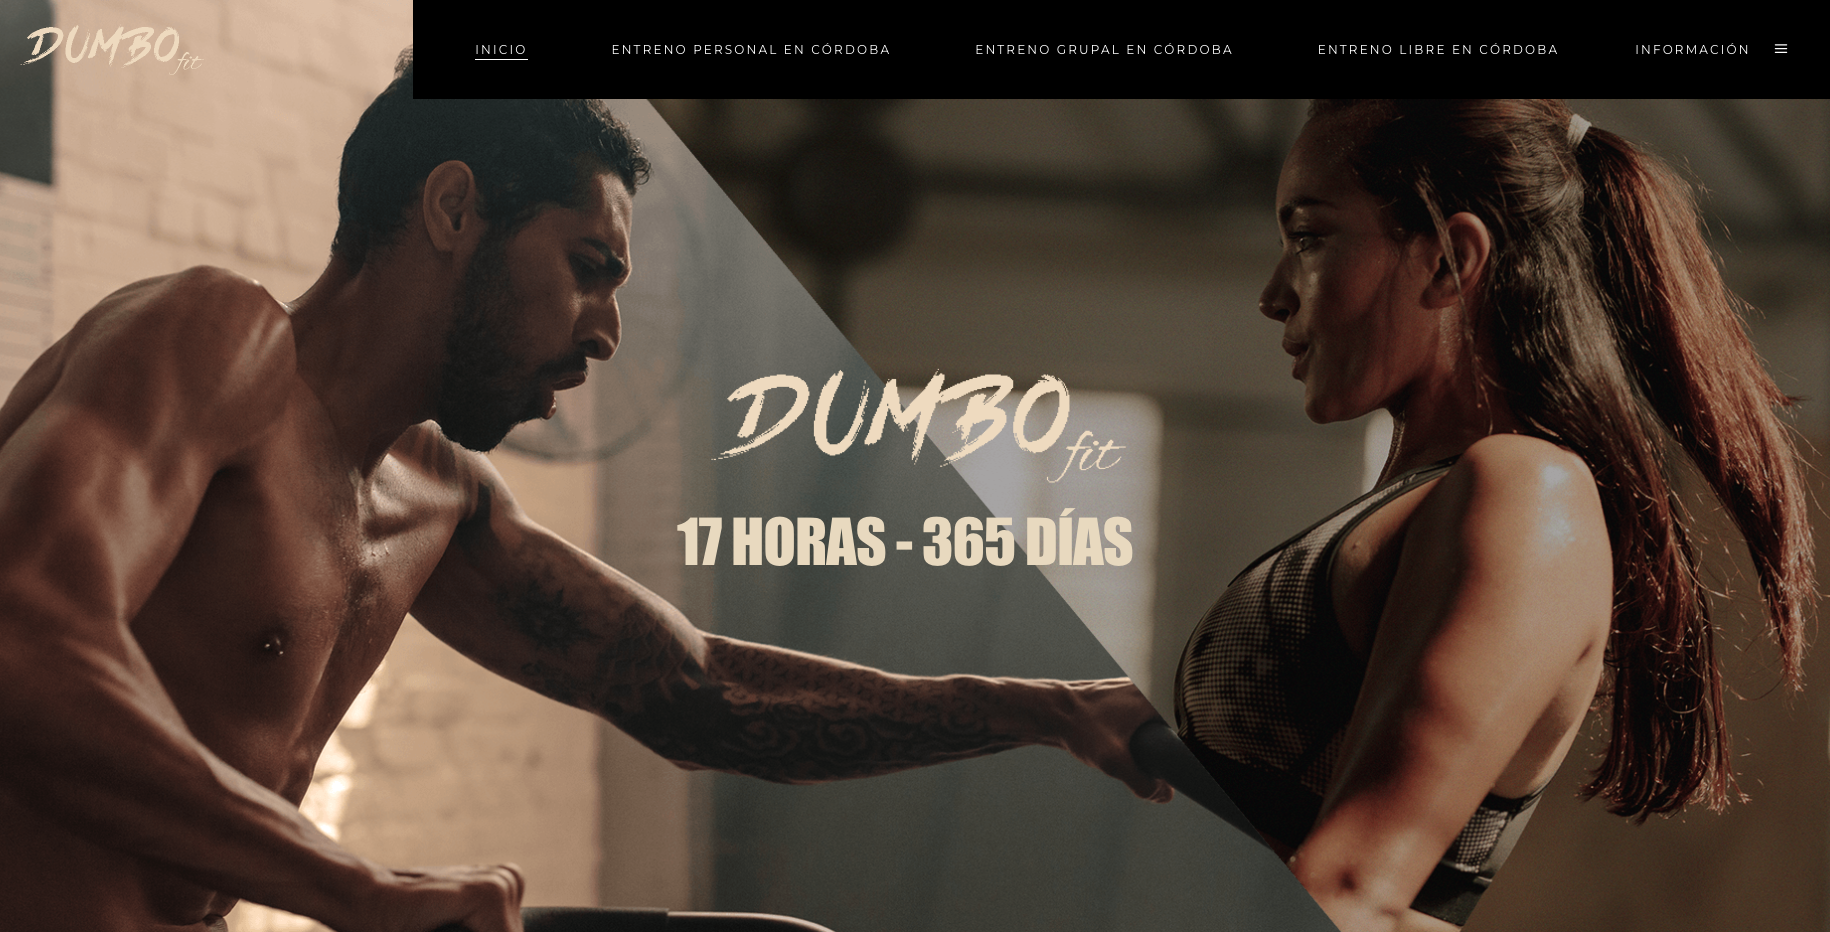 Dumbo Fit: tu espacio de entrenamiento personalizado en Córdoba